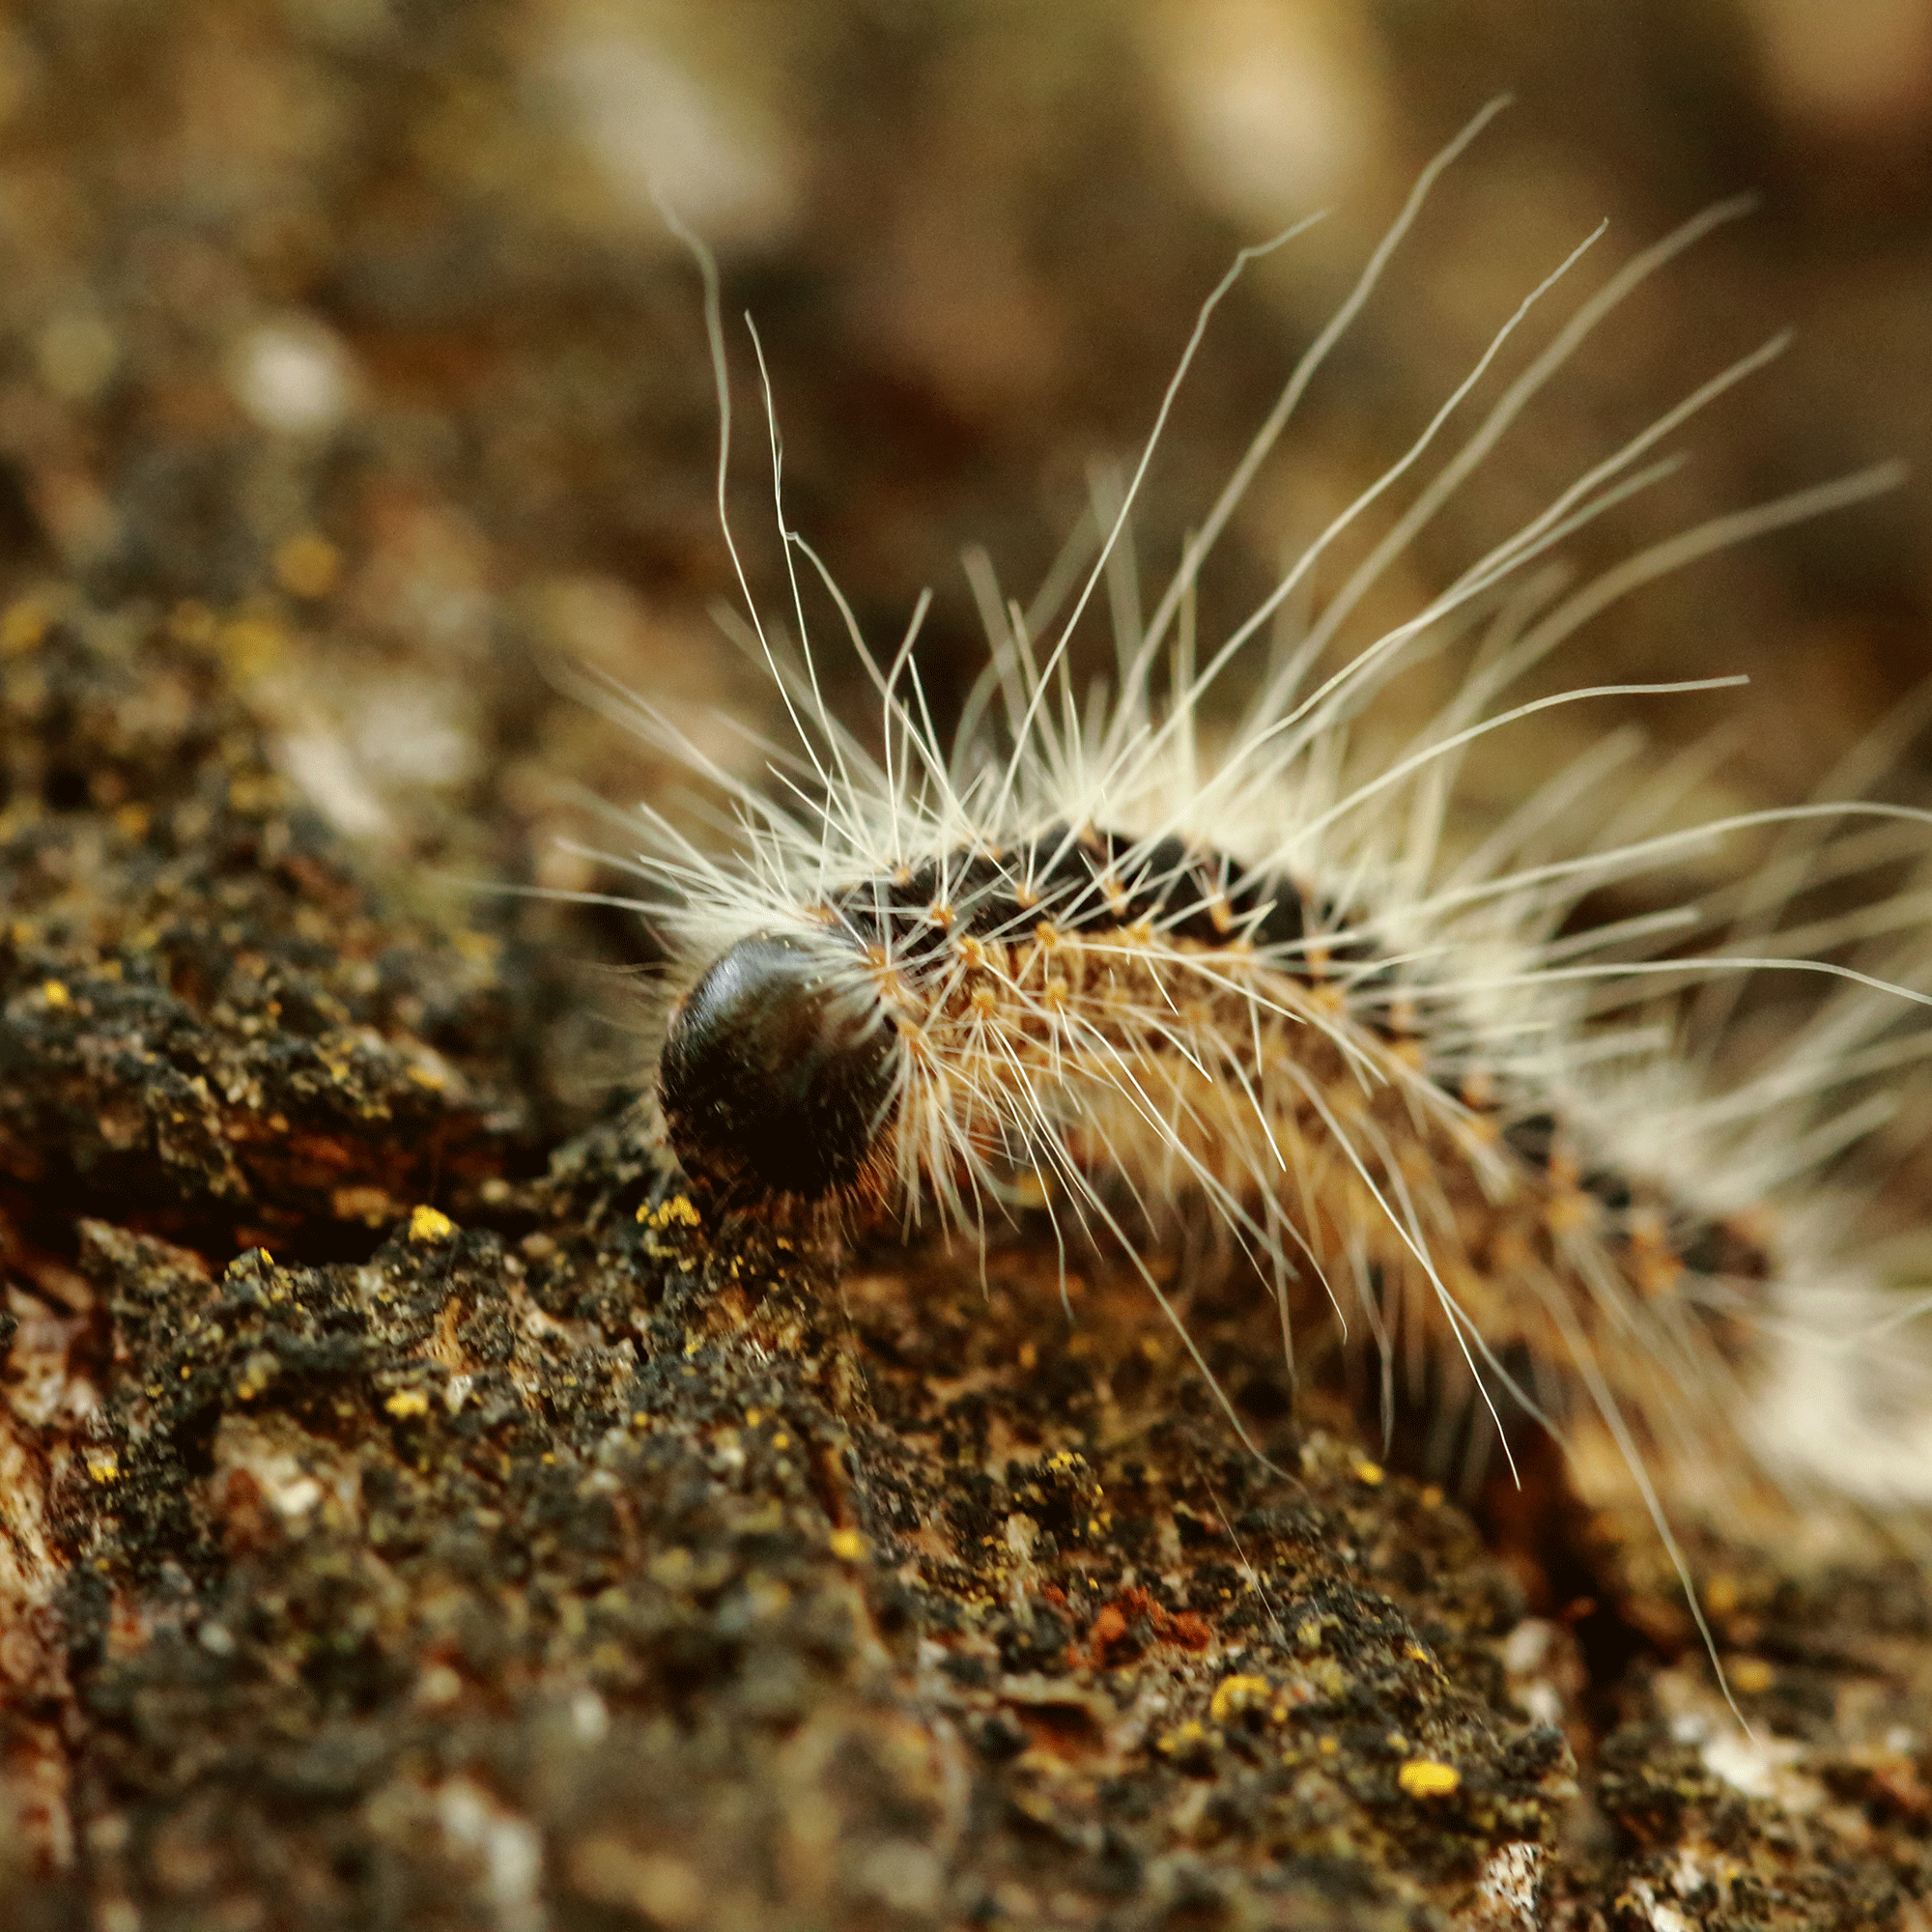 Toxic caterpillar